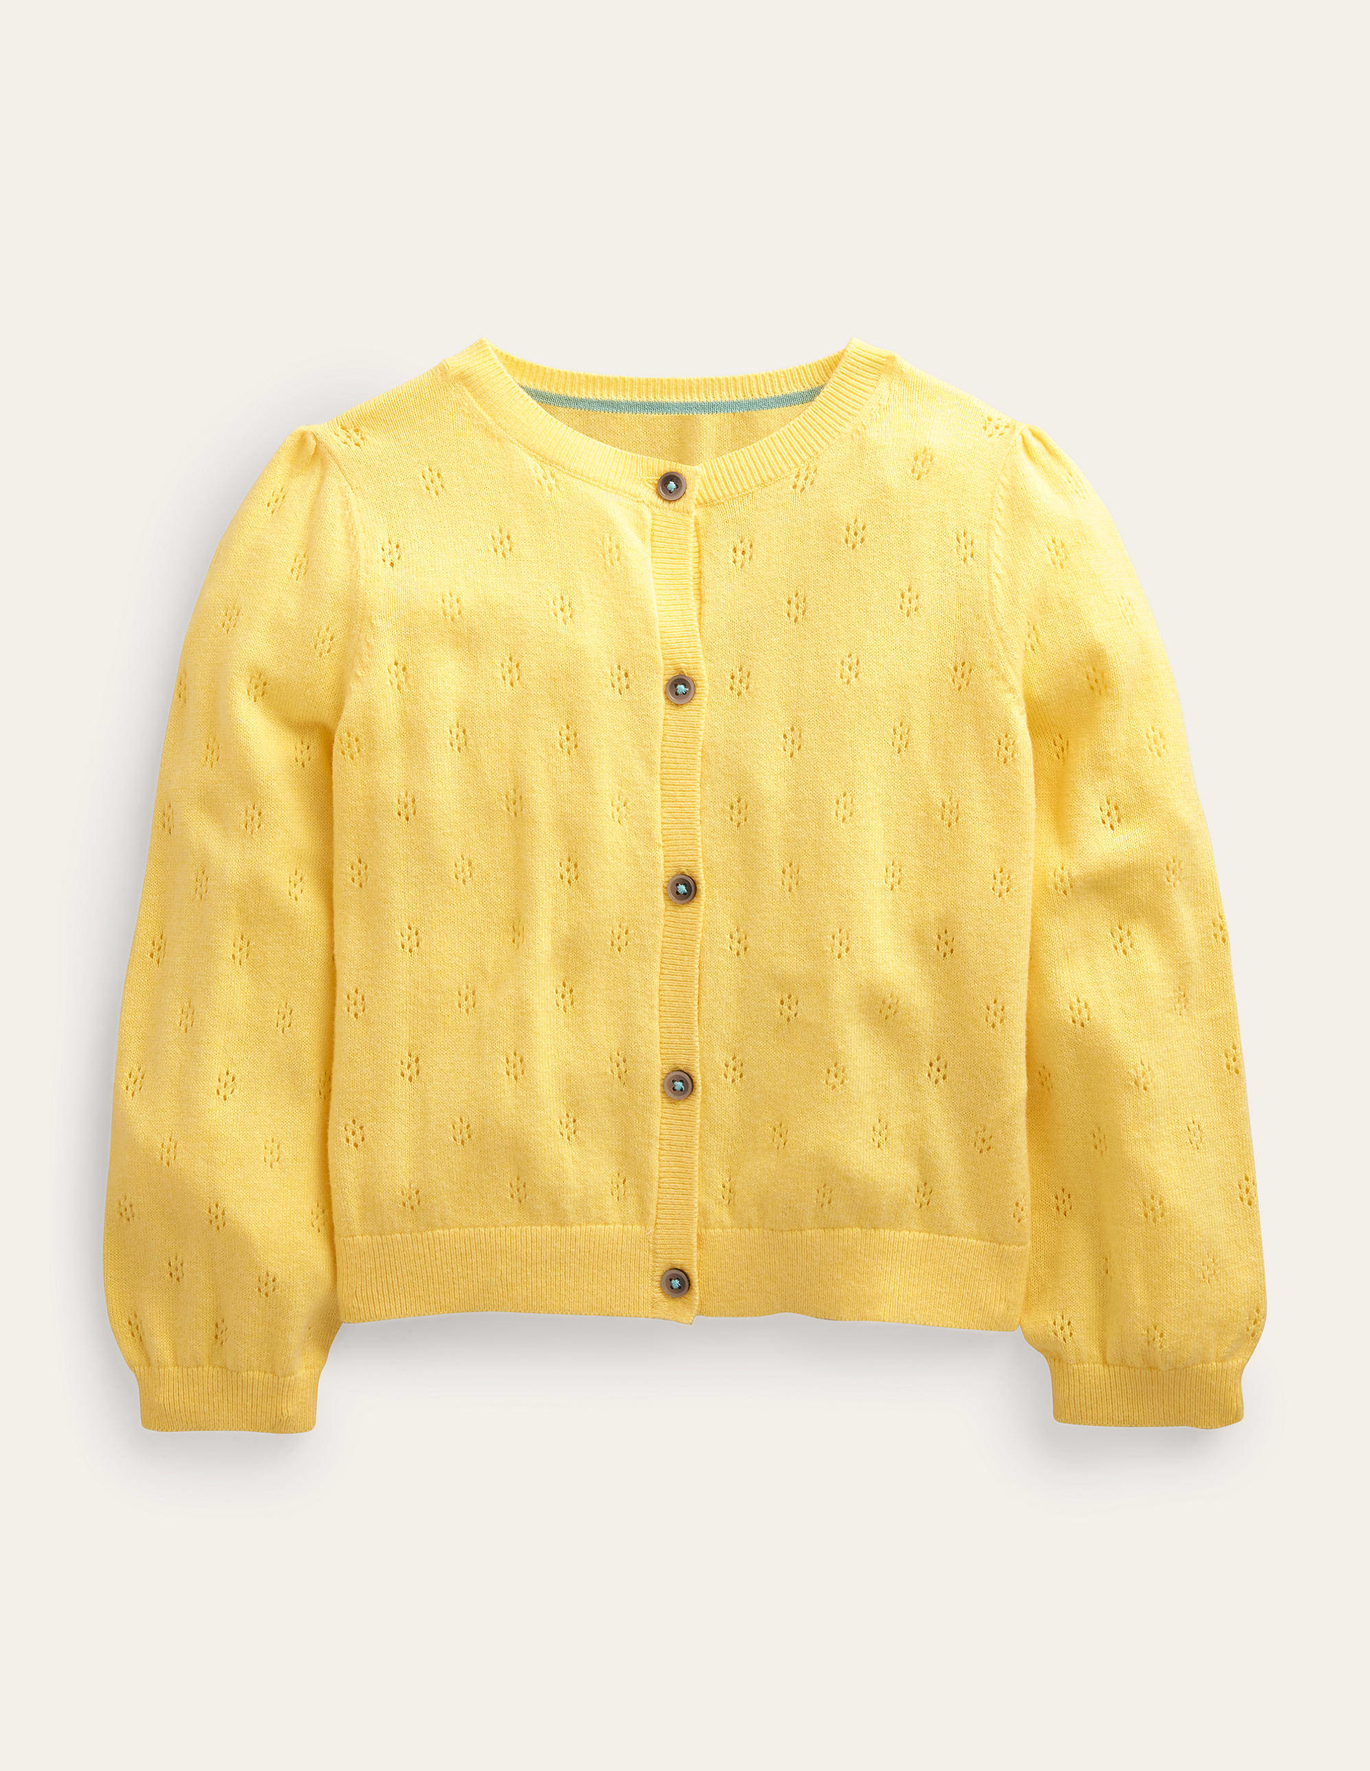 Boden Cotton Cashmere Cardigan - Soft Lemon